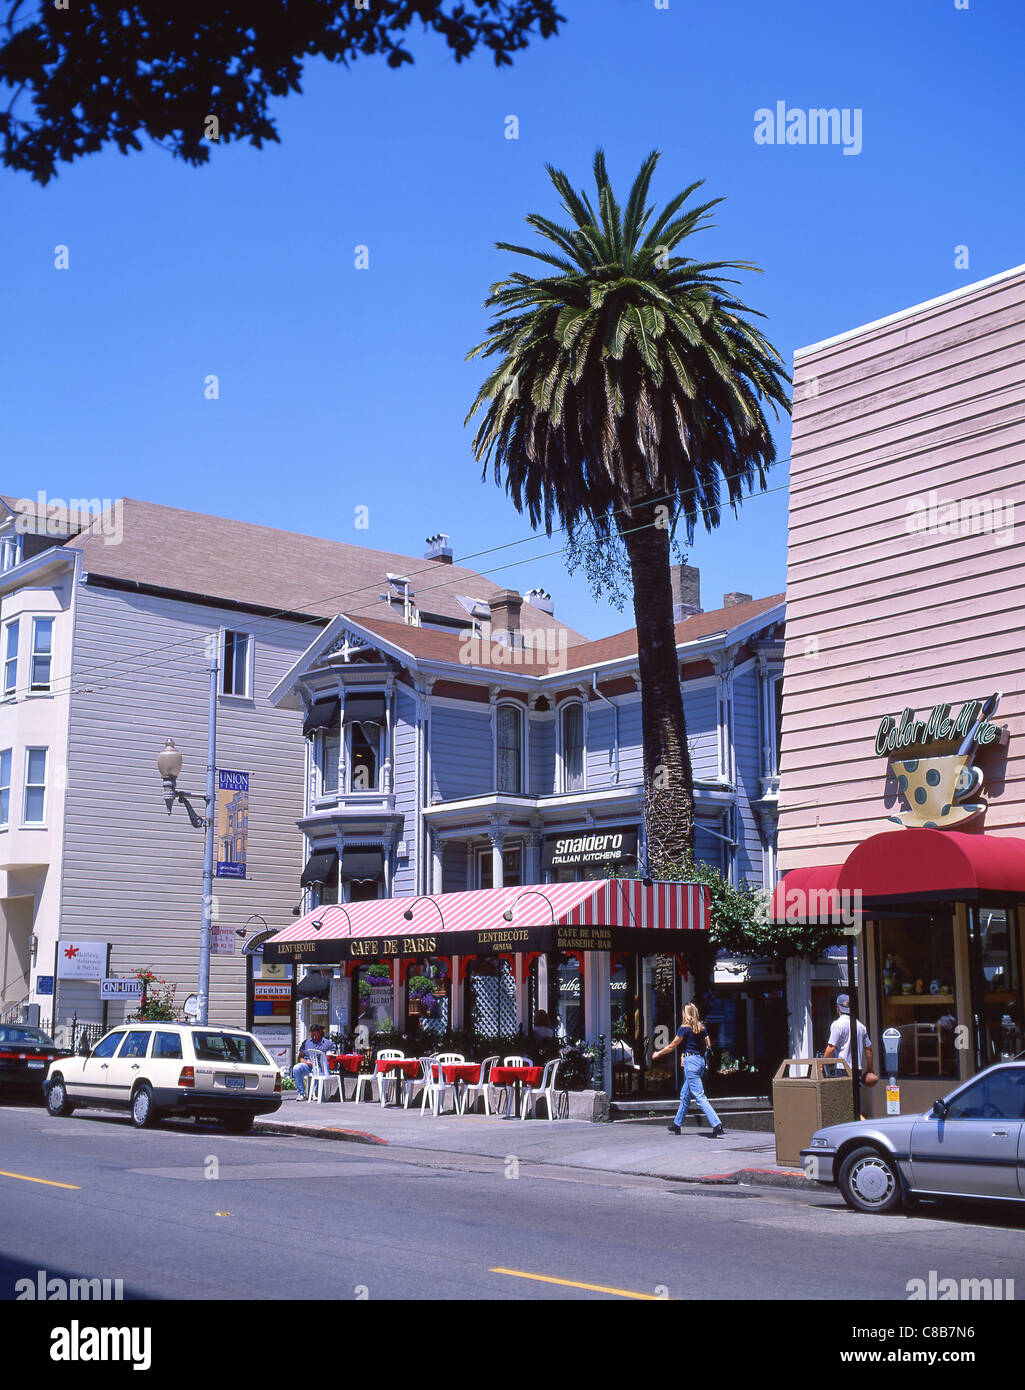 Restaurants sur Union Street, San Francisco, Californie, États-Unis d'Amérique Banque D'Images